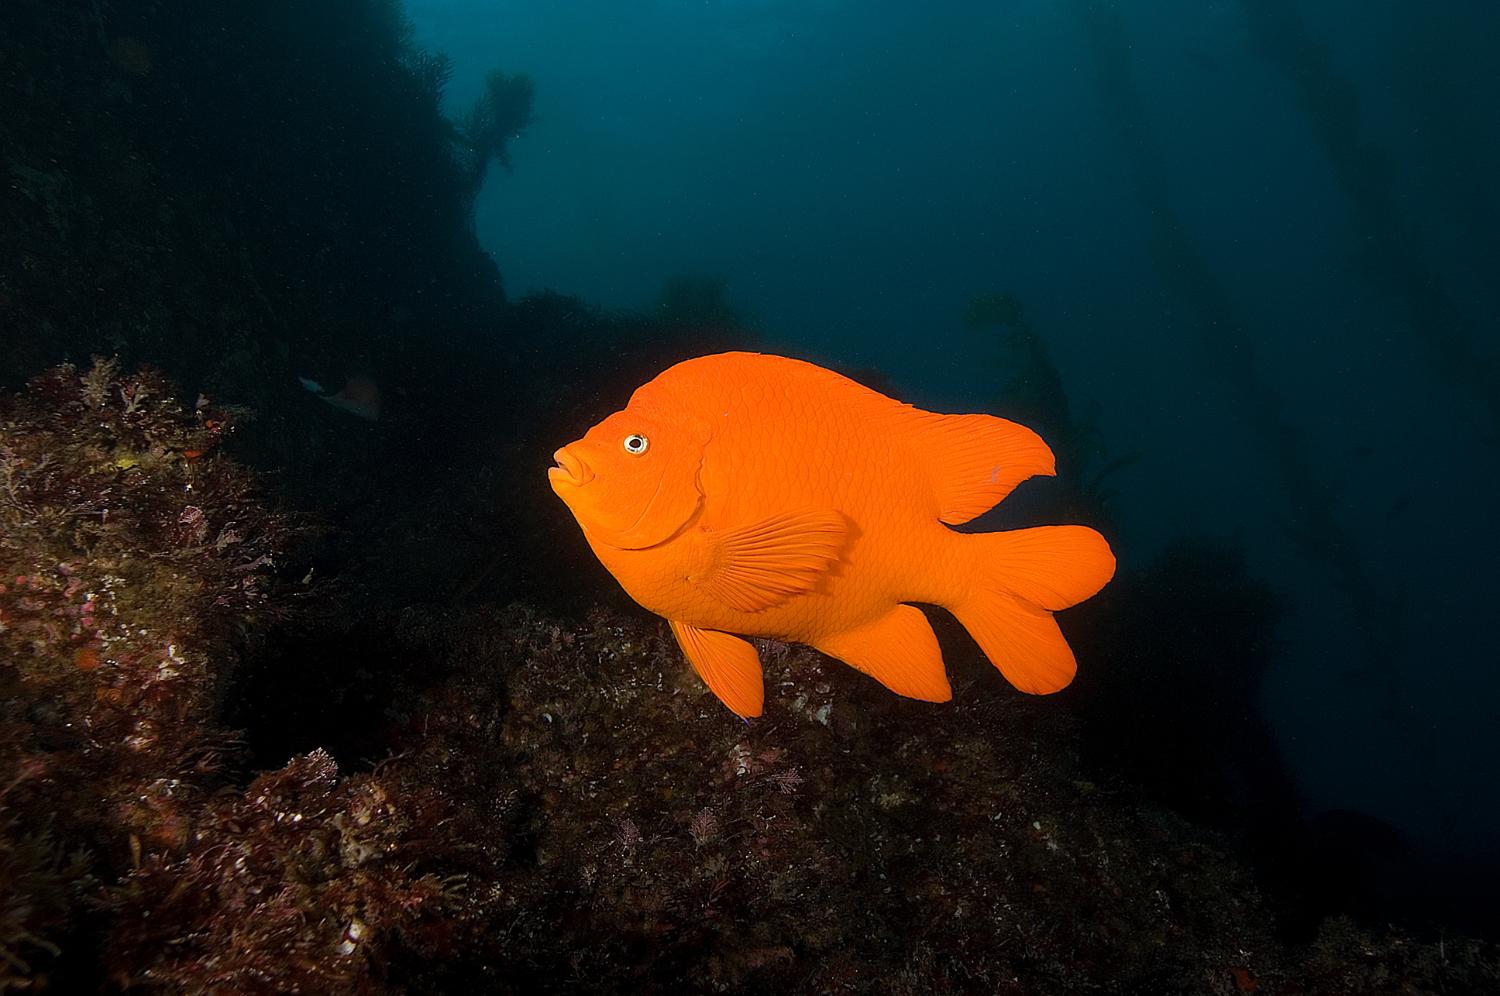 The Garibaldi fish, California's state marine fish.